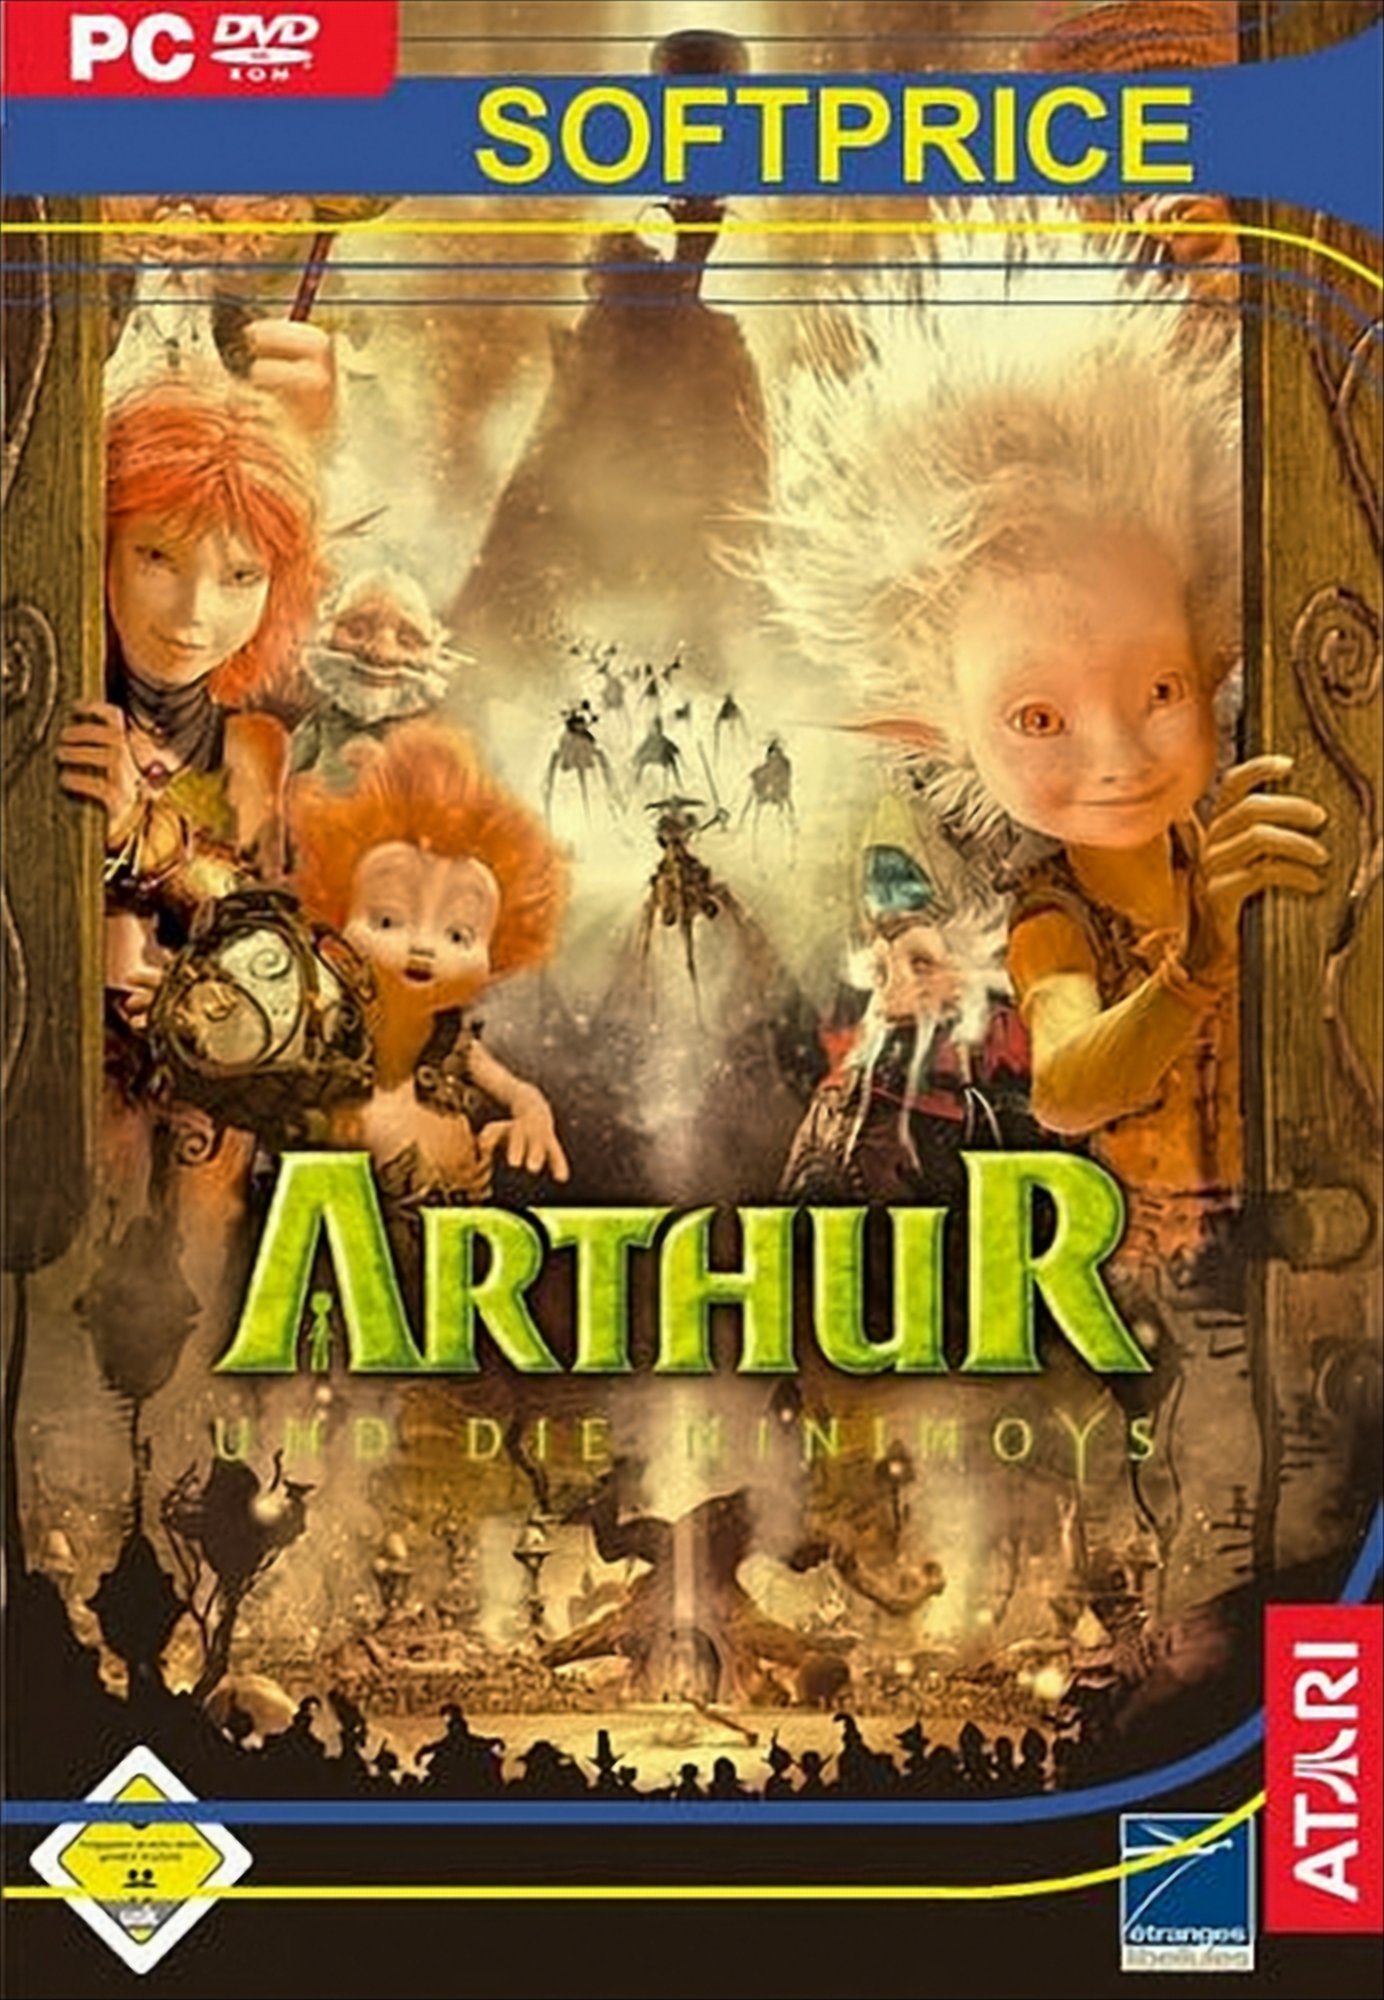 Arthur und die Minimoys von Atari